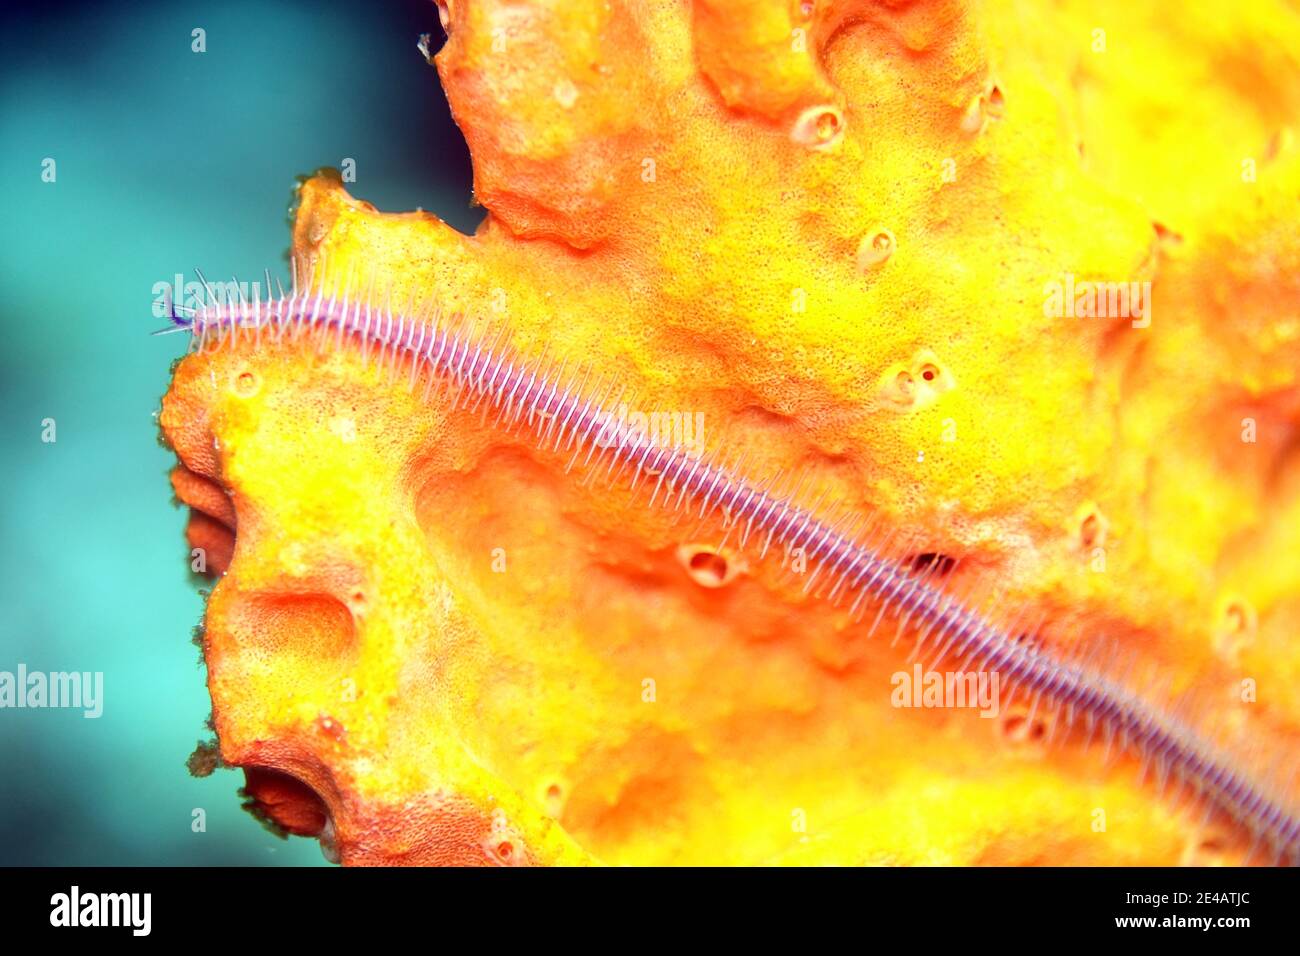 einzelner Arm eines Macrophiothrix nereidina - Schlangenstern auf einem organgefarbenem Schwamm Stock Photo